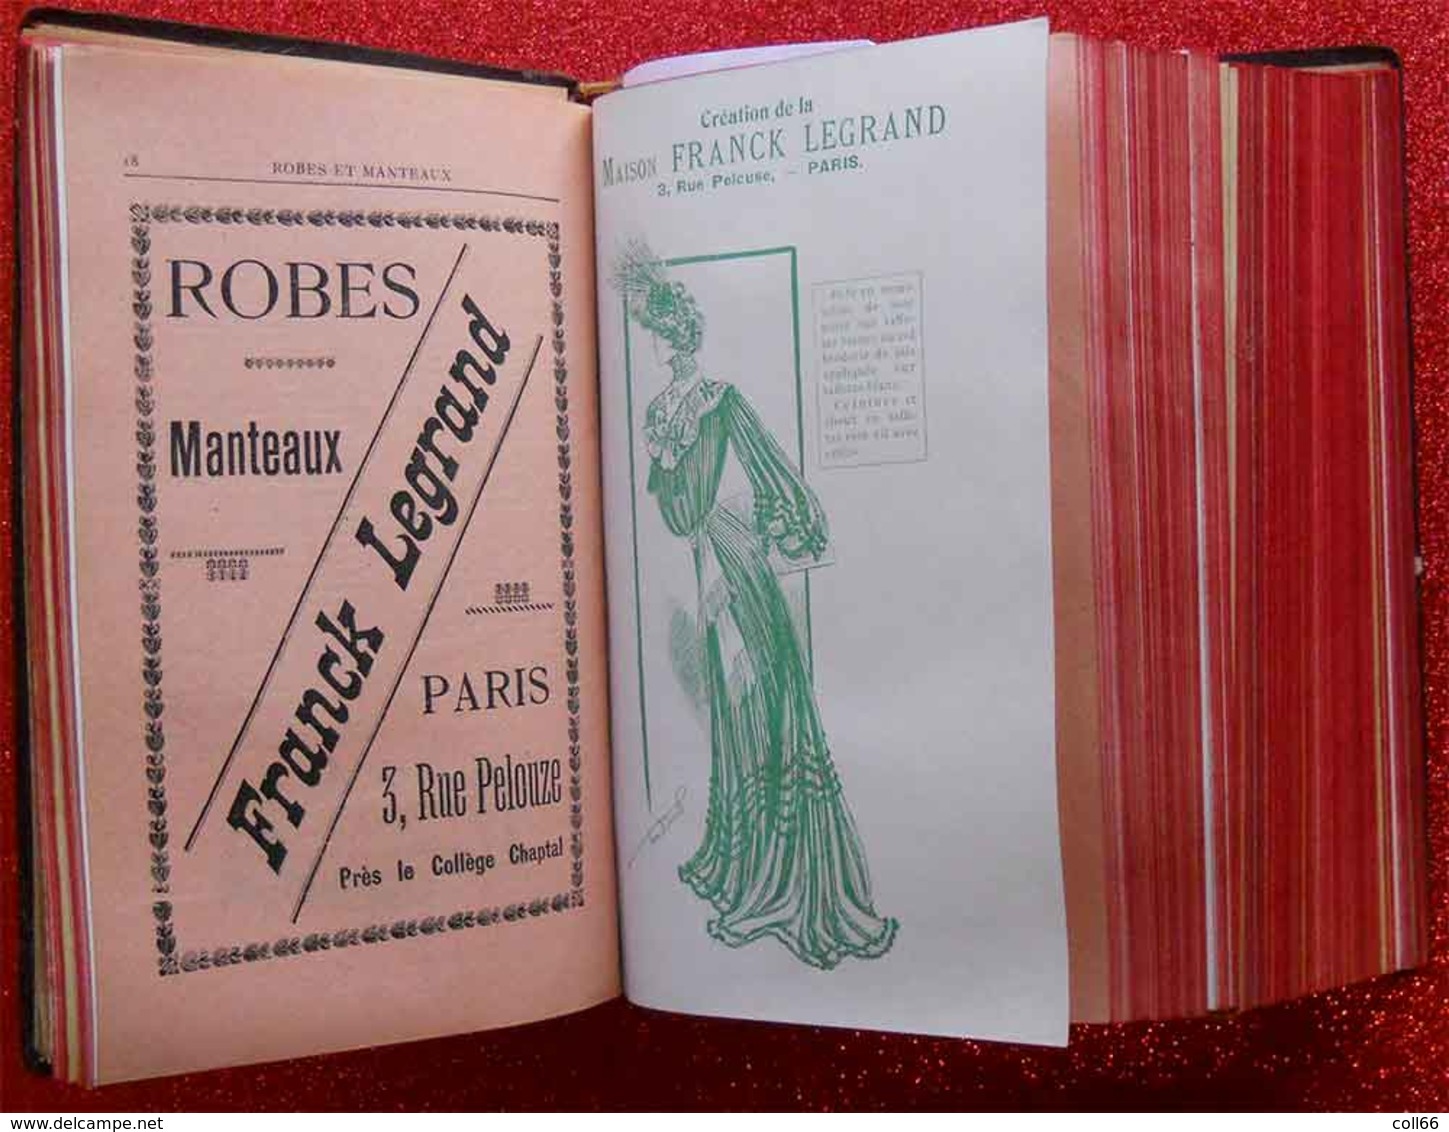 1900 New Art Nouveau Annuaire Général de la Mode 1903 Grands Créateurs Sarah Bernhardt Corsets Robes Coiffeur Chapeaux